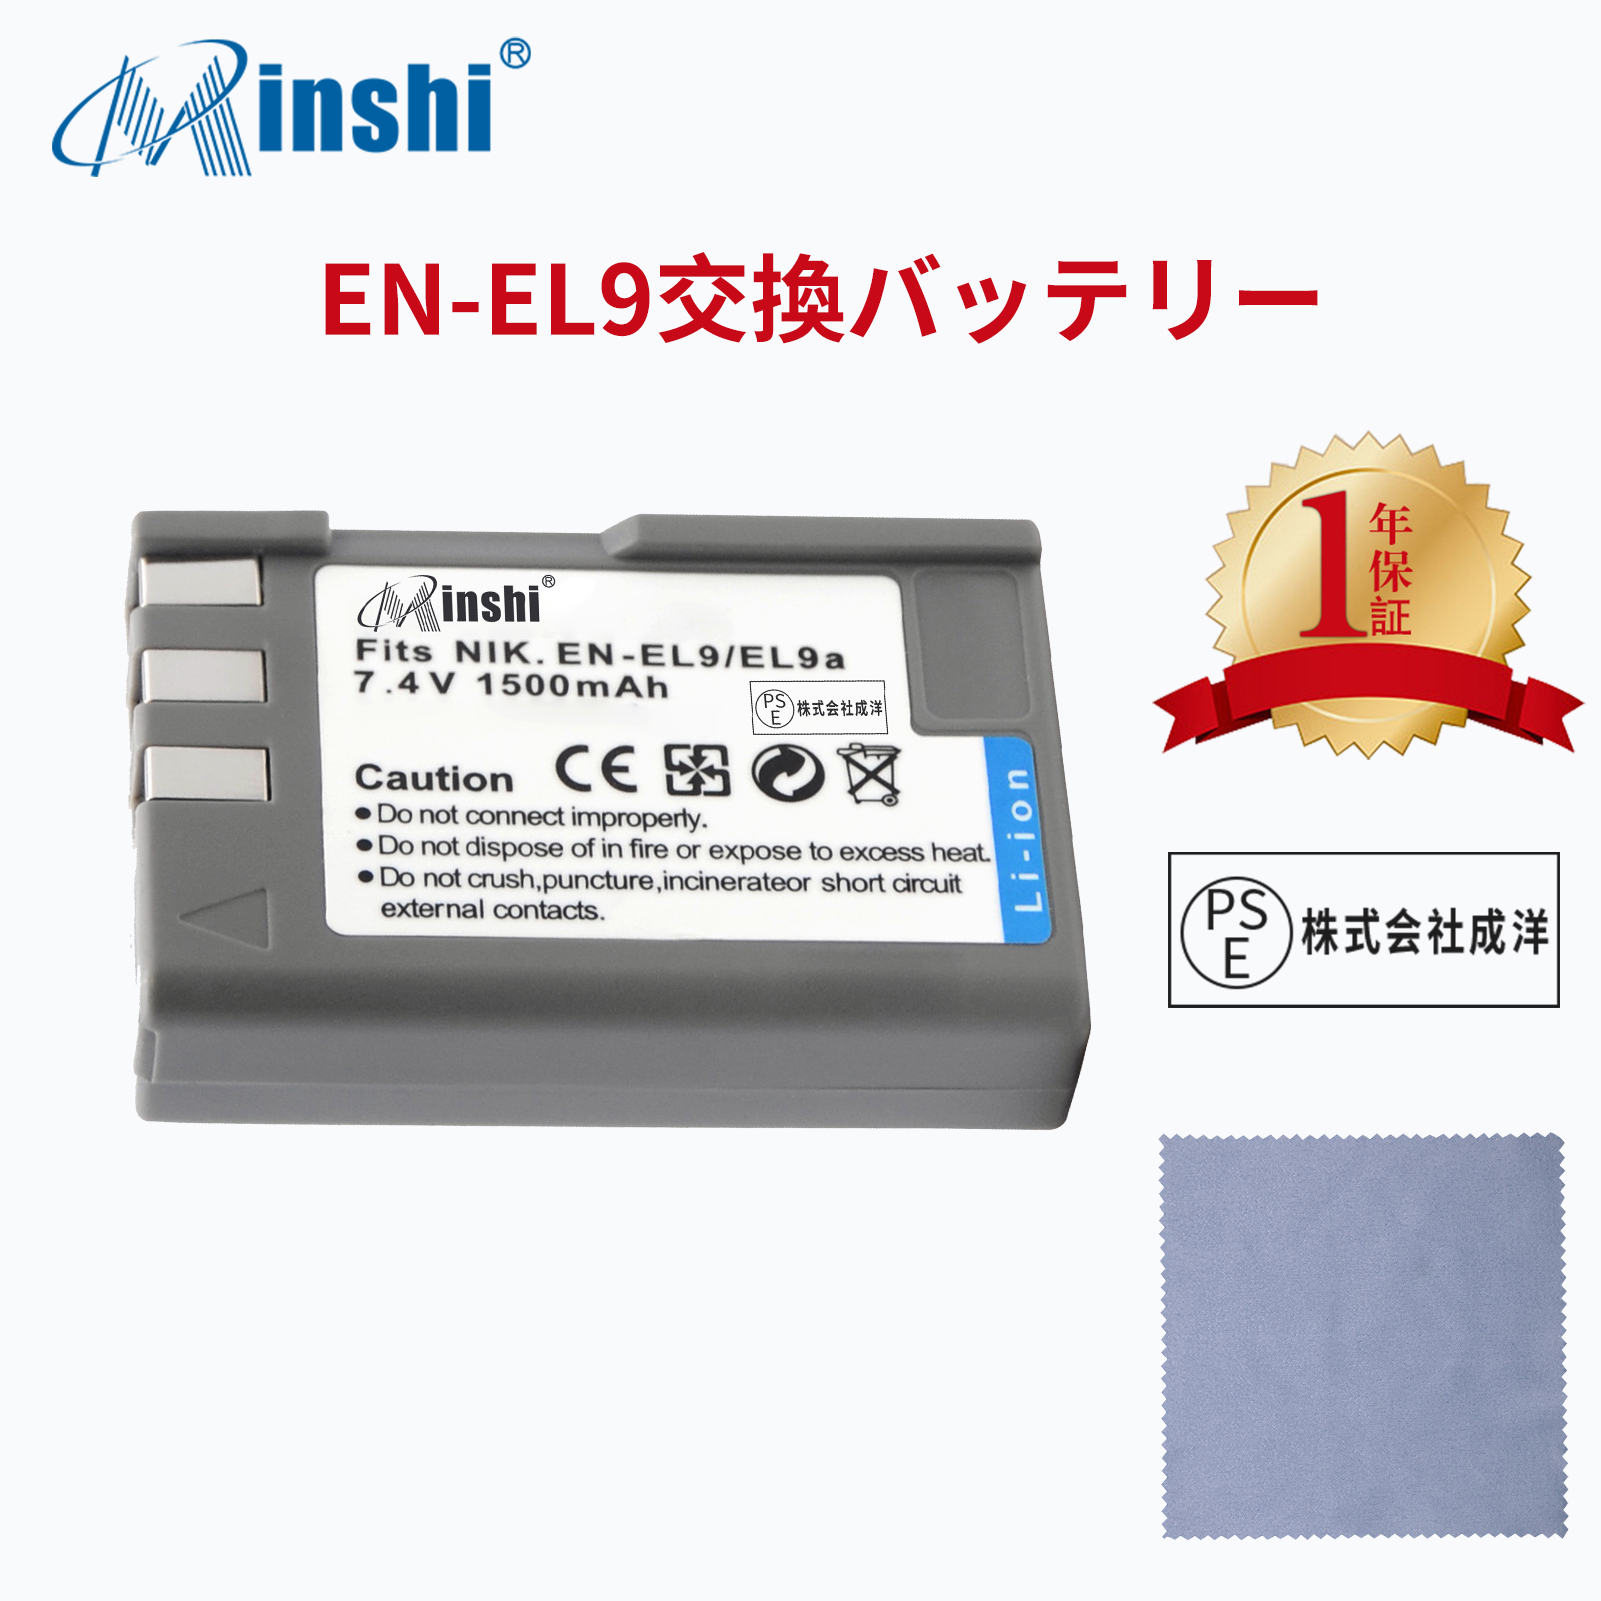 【クロス付き】 minshi NIKON D40 EN-EL9a EN-EL9e 対応  1500mAh PSE認定済 高品質EN-EL9 EN-EL9a EN-EL9e互換バッテリーPHB